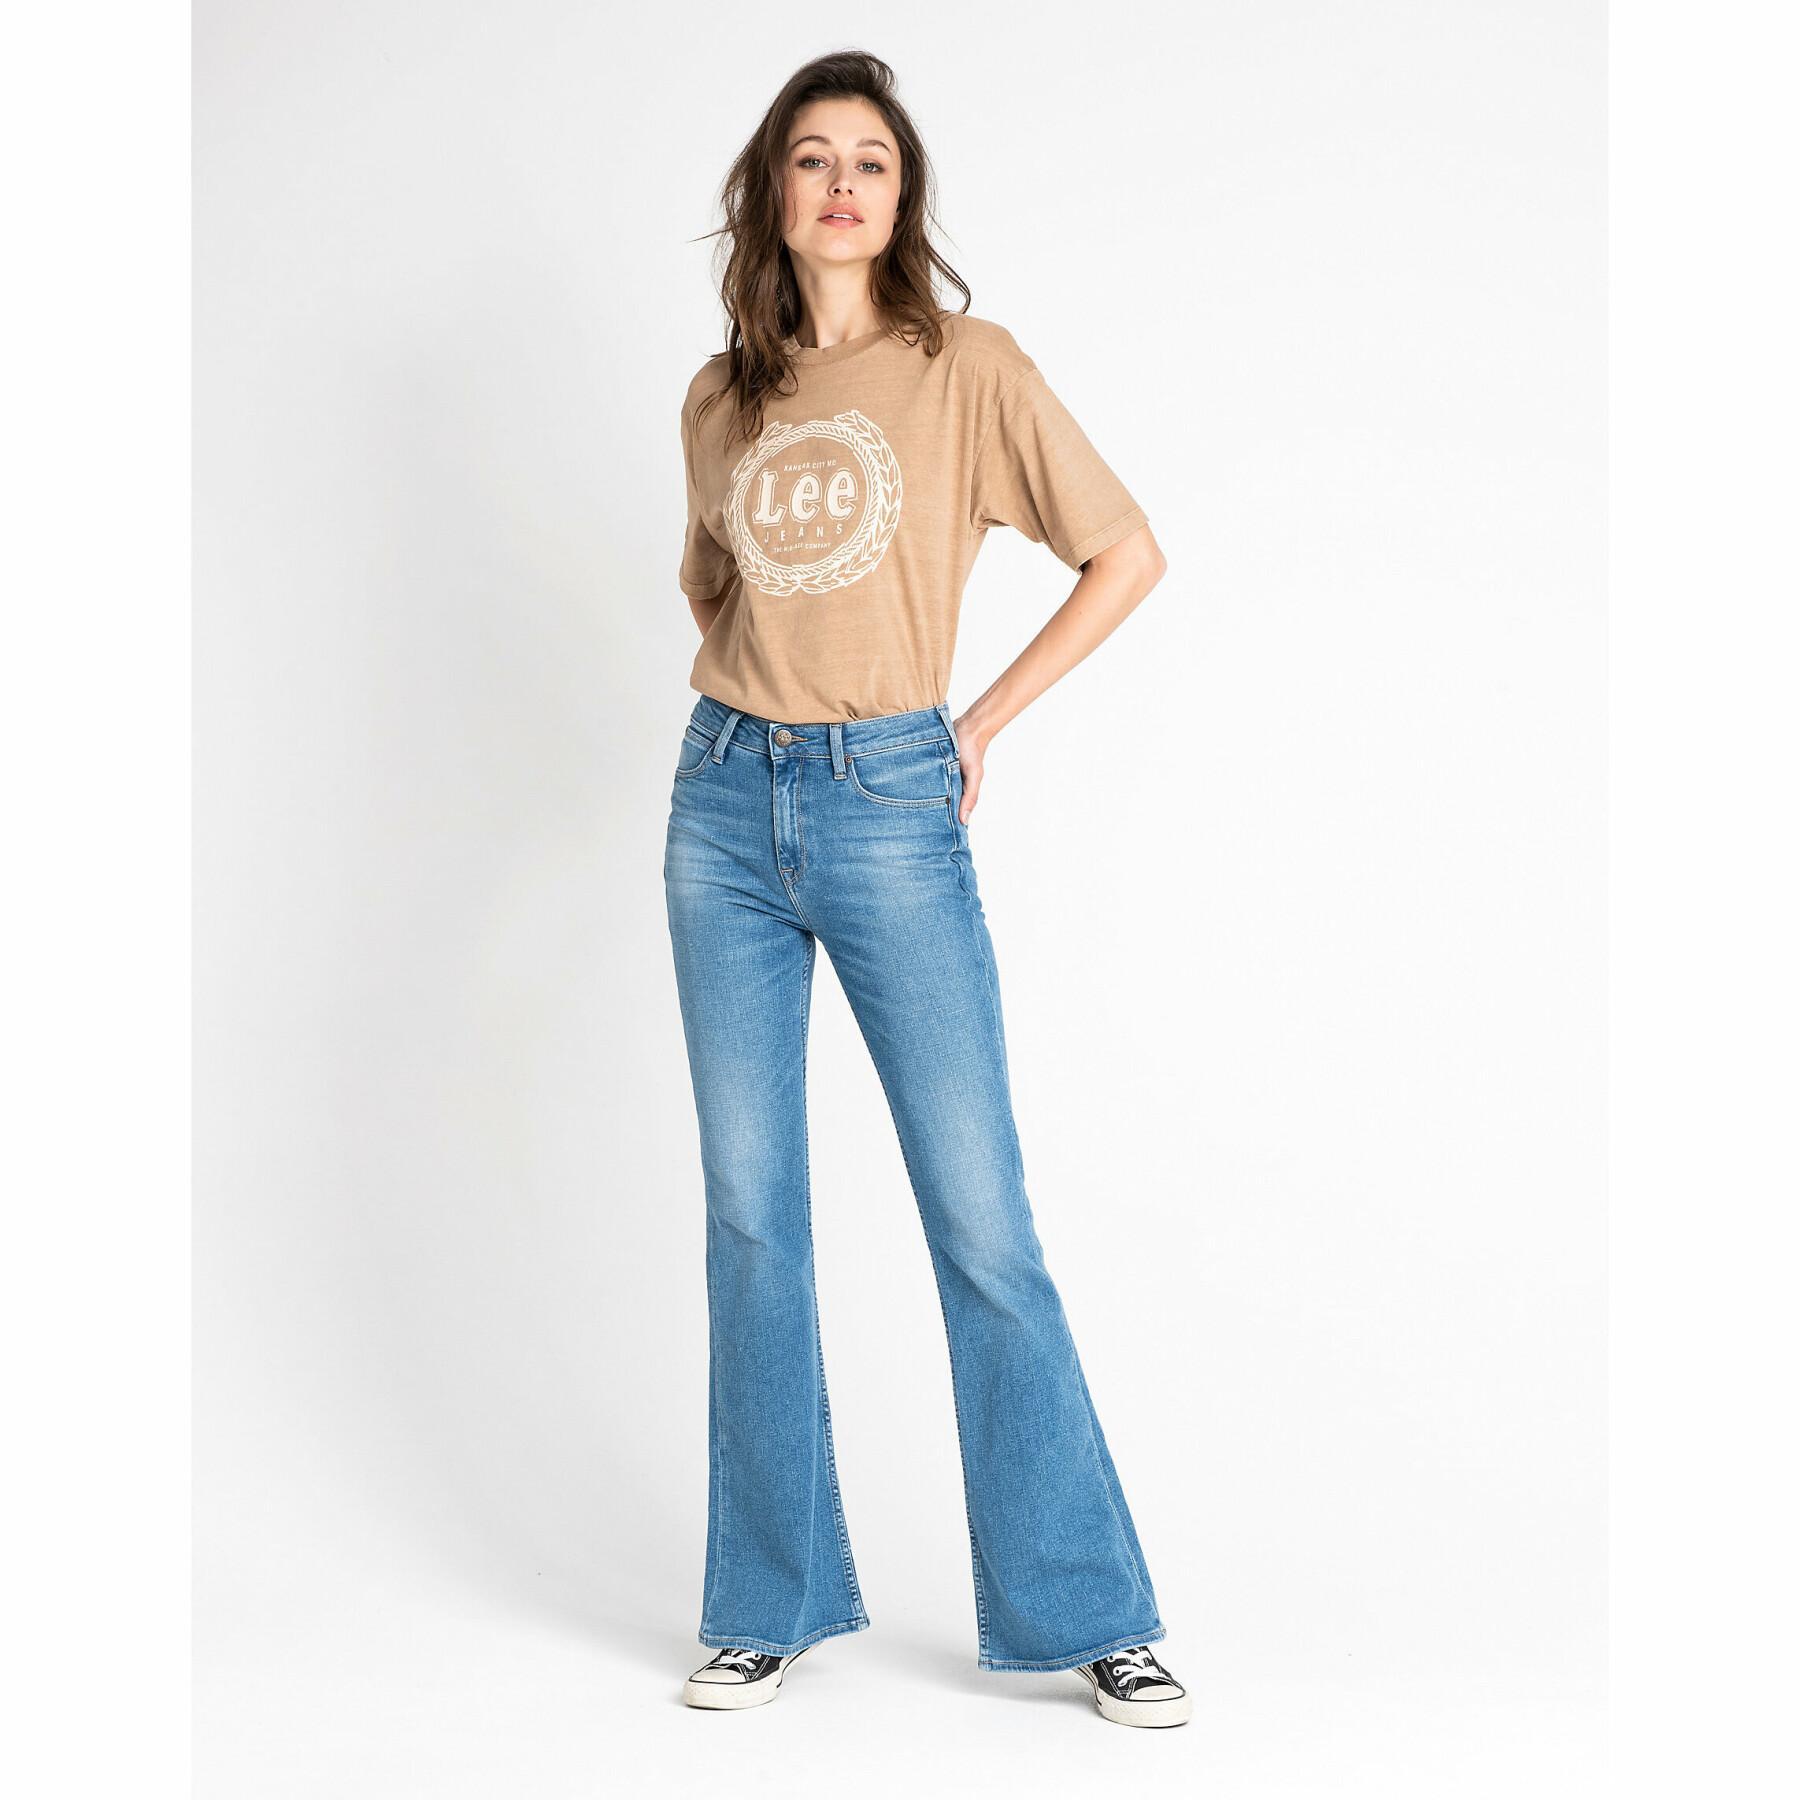 Women's jeans Lee Breese